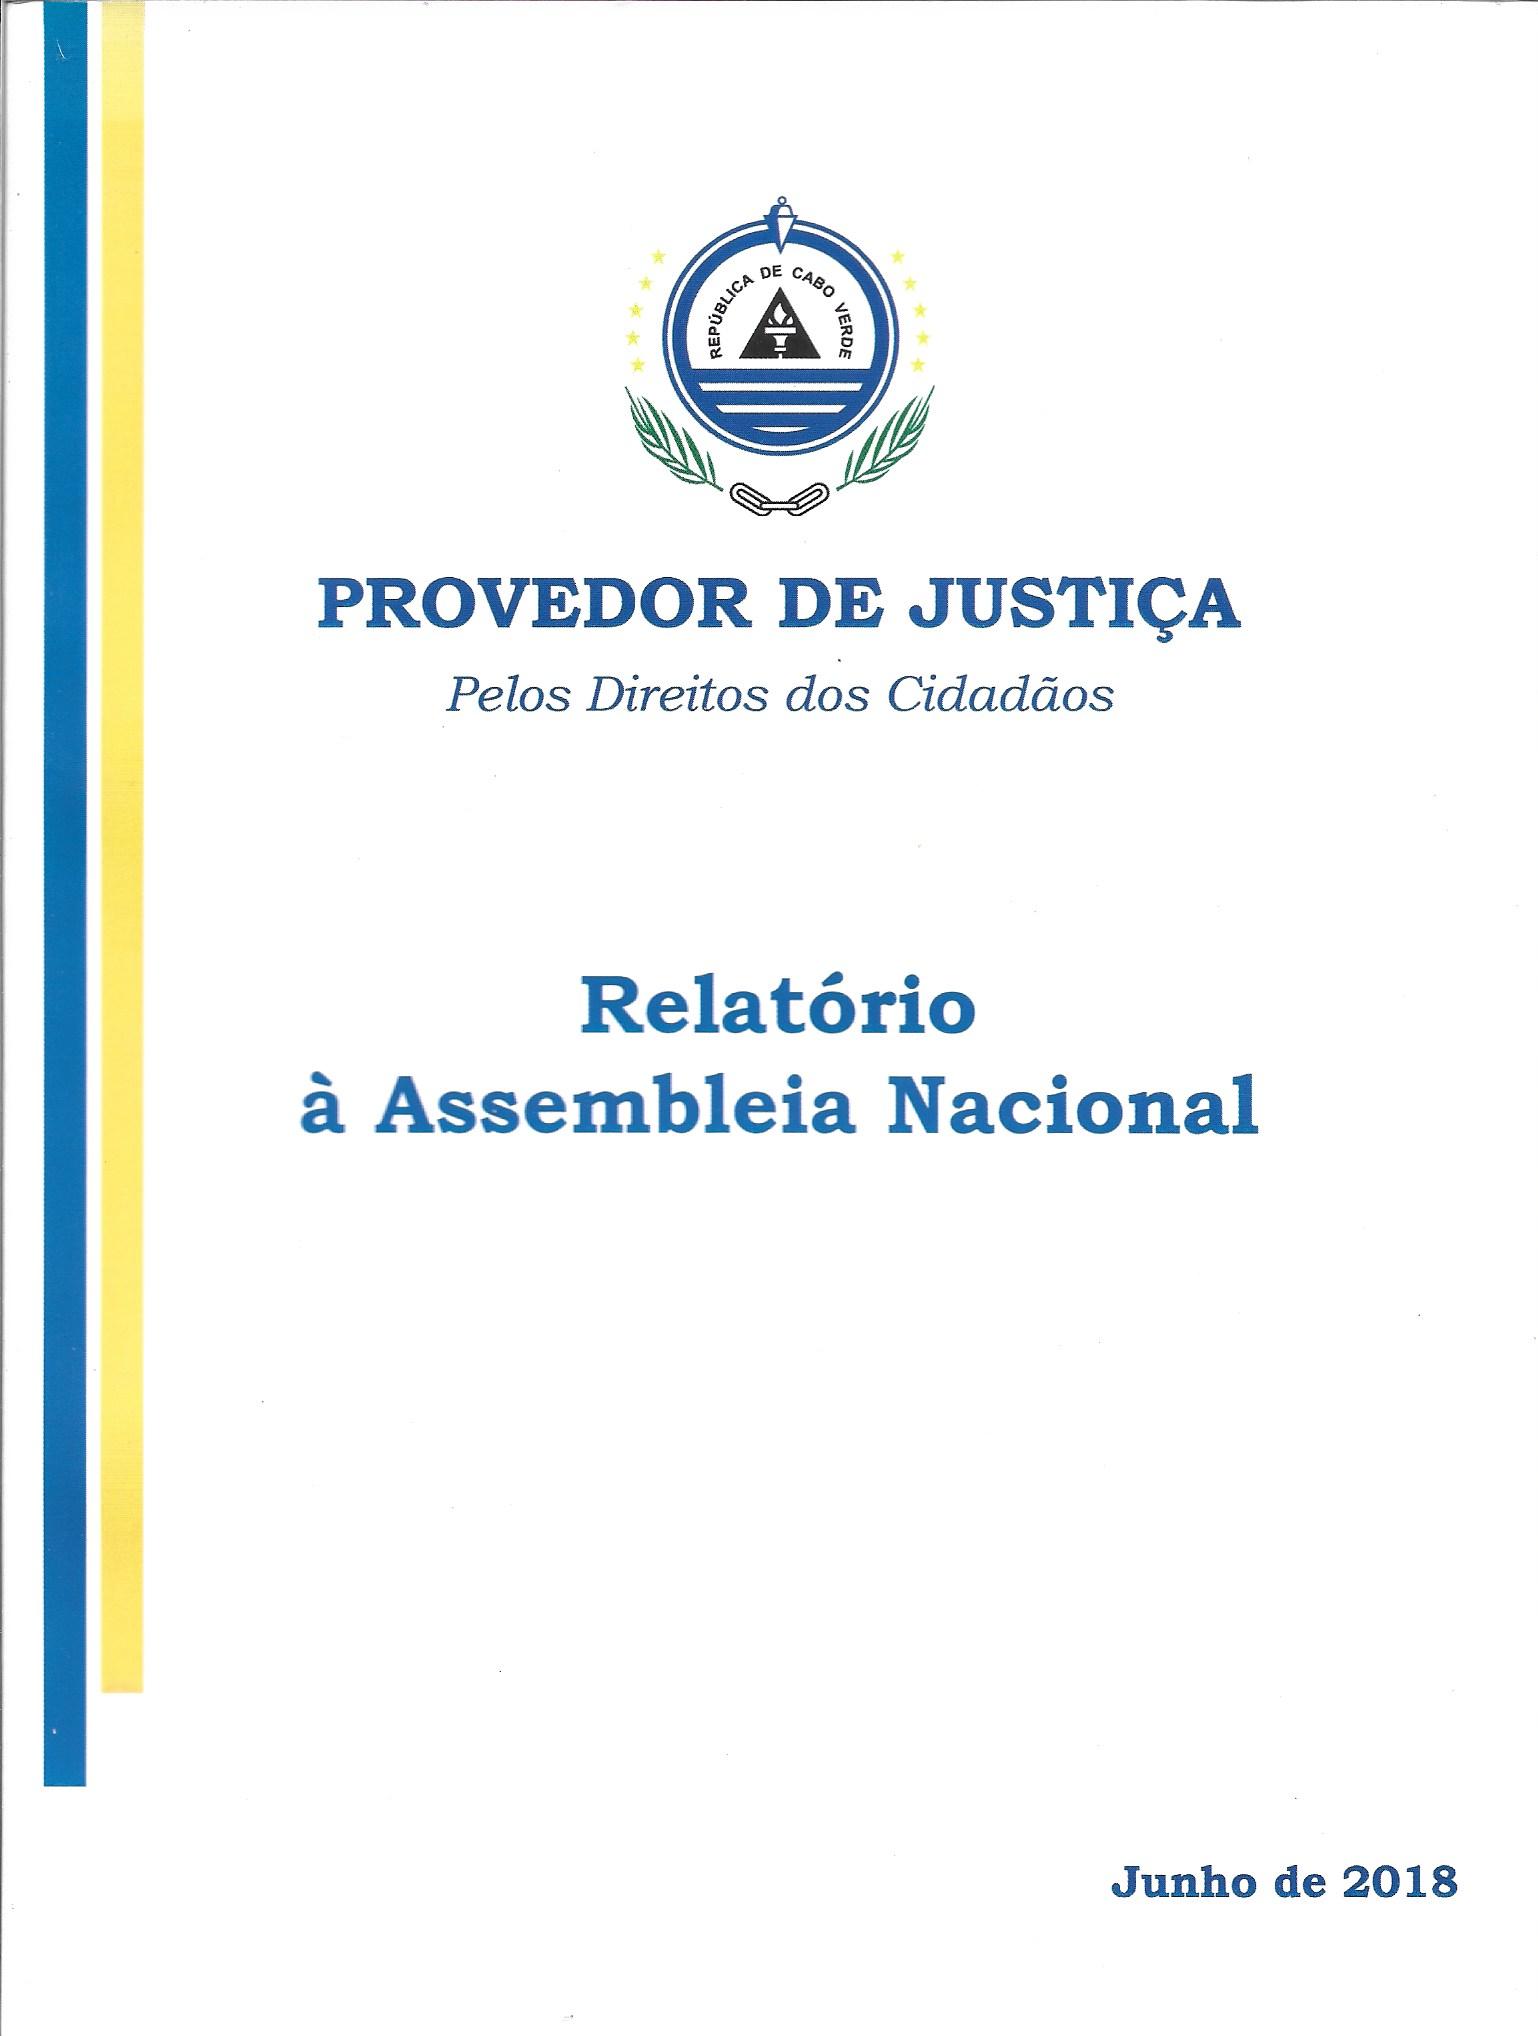 Provedor de Justiça - Pelos Direitos dos Cidadãos